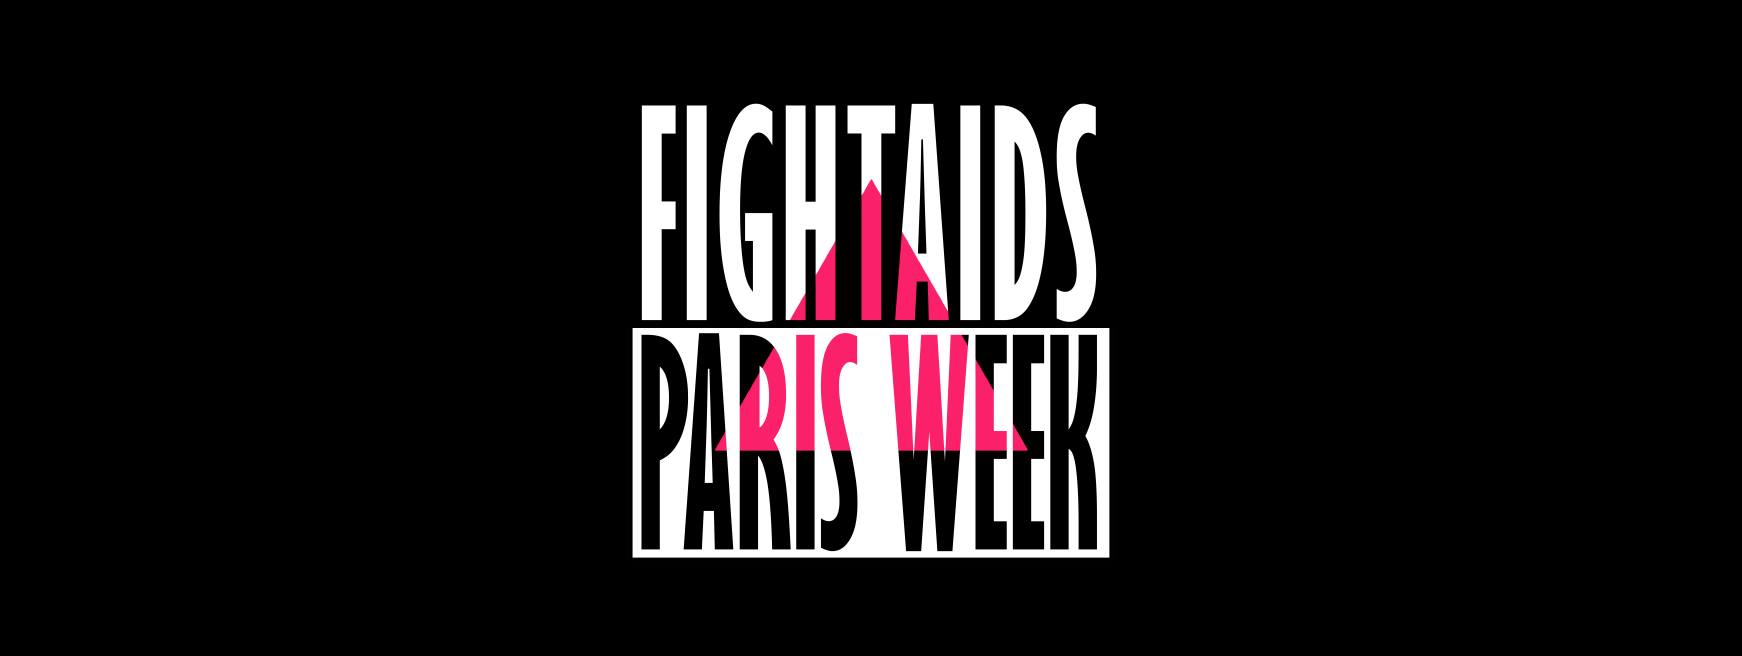 Fight AIDS Paris Week : animations, commémorations, « deux jours autour des luttes contre le sida en 2017 » (VIDEO)